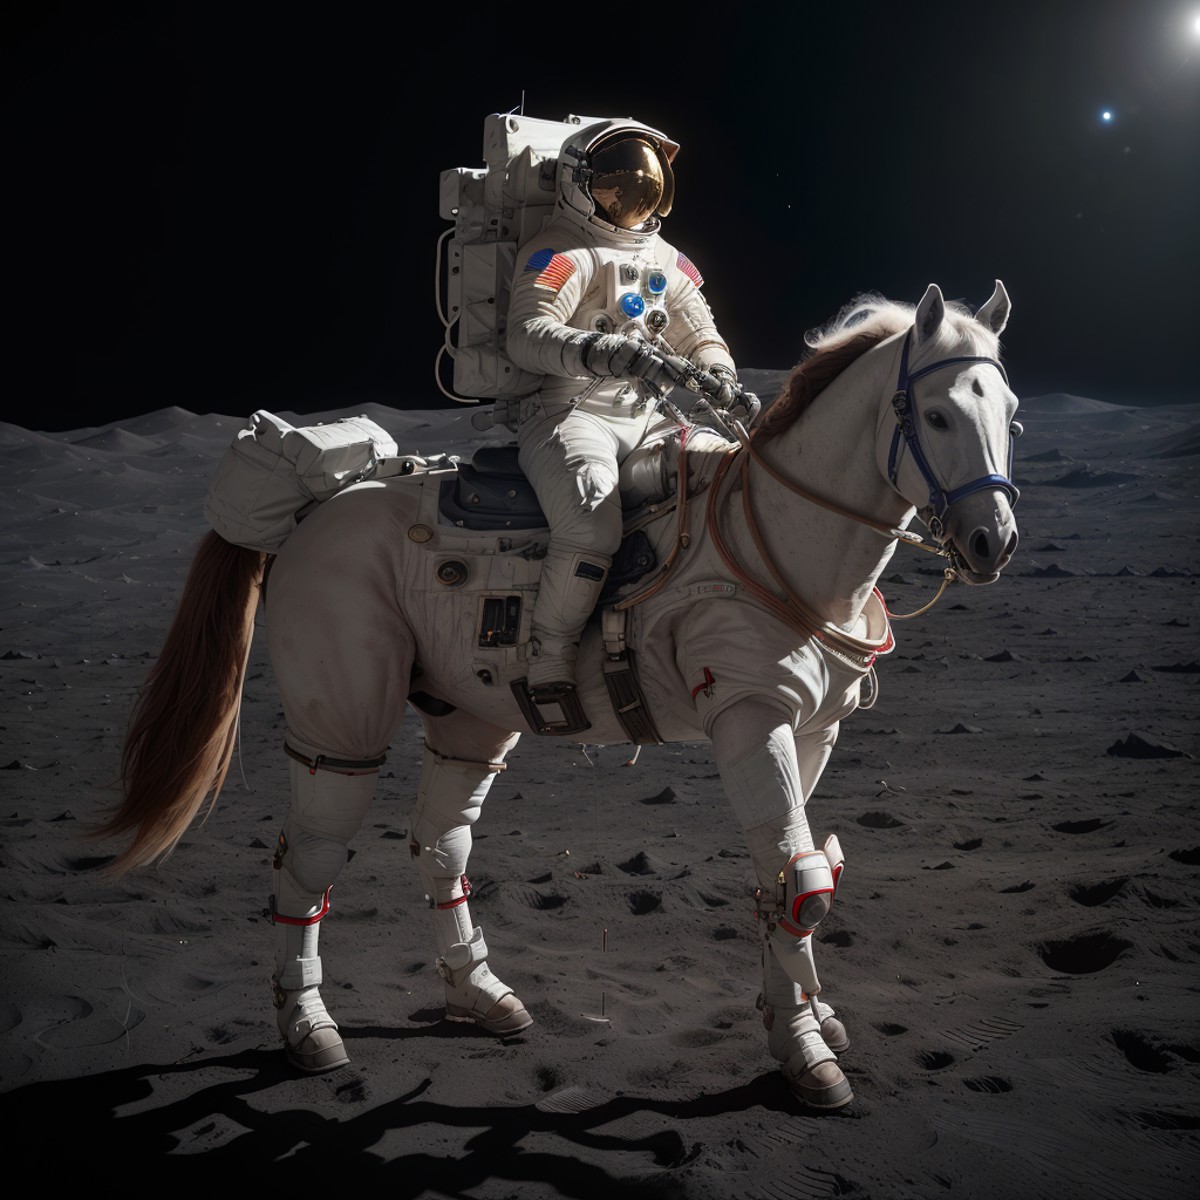 an astronaut riding a horse on the moon, 8k uhd